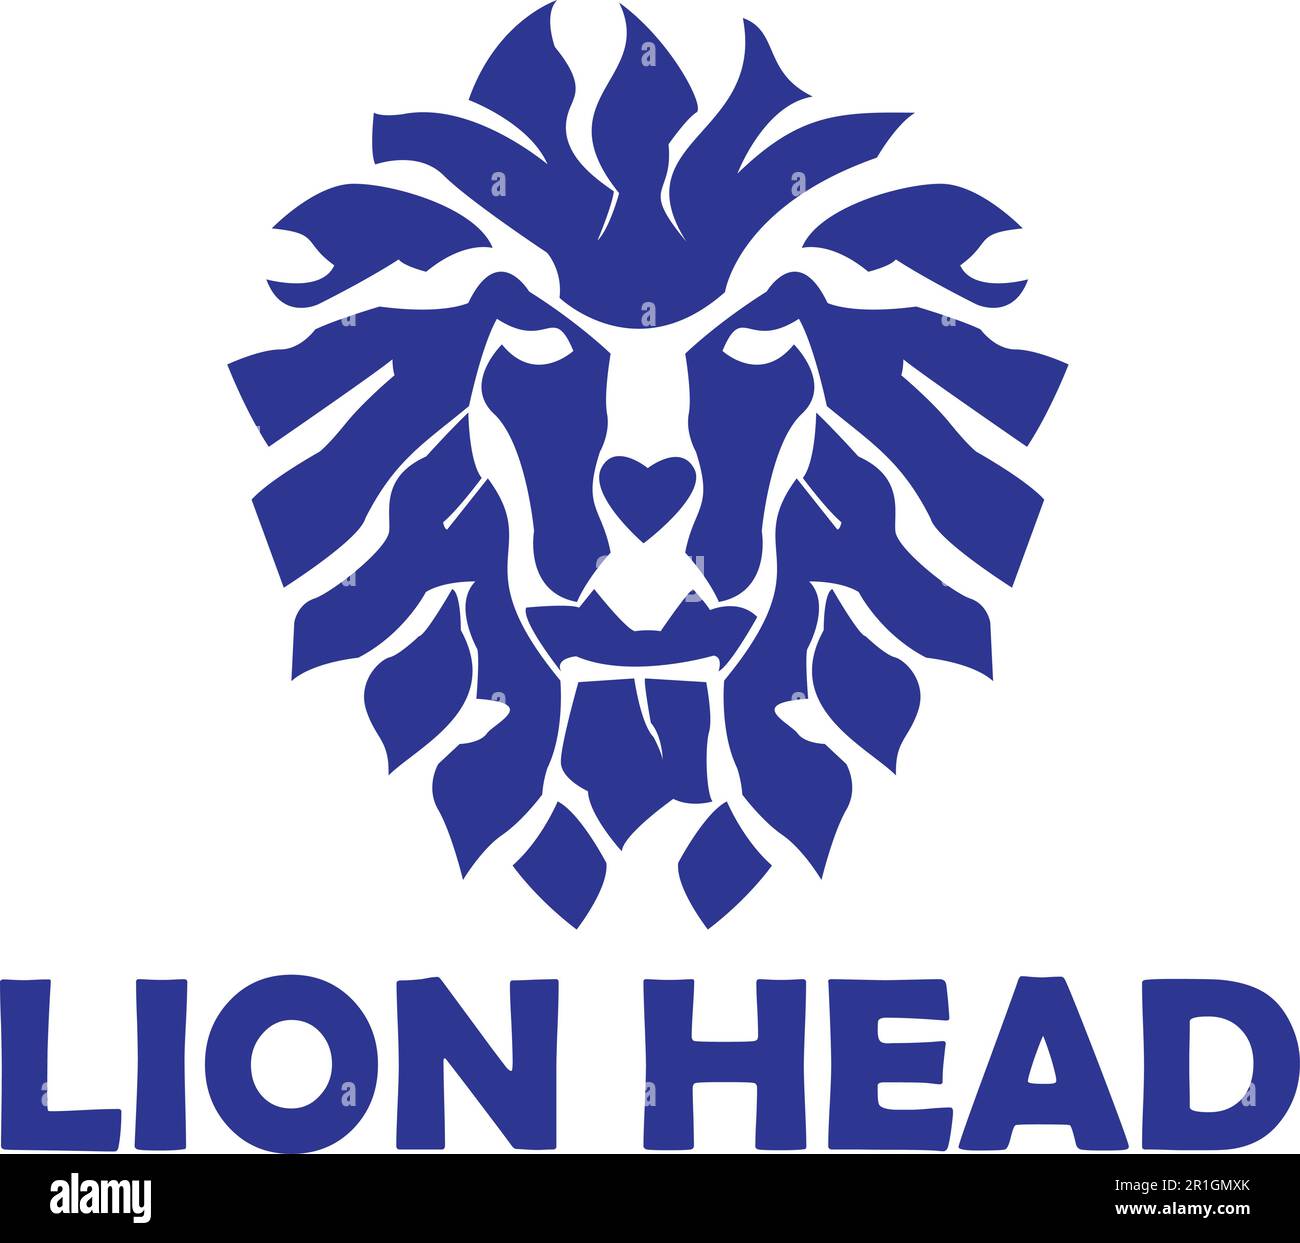 Le modèle de logo de la tête de lion fait à partir de formes abstraites est un fichier vectoriel de haute qualité qui peut être utilisé à diverses fins de conception. Il dispose d'un Illustration de Vecteur